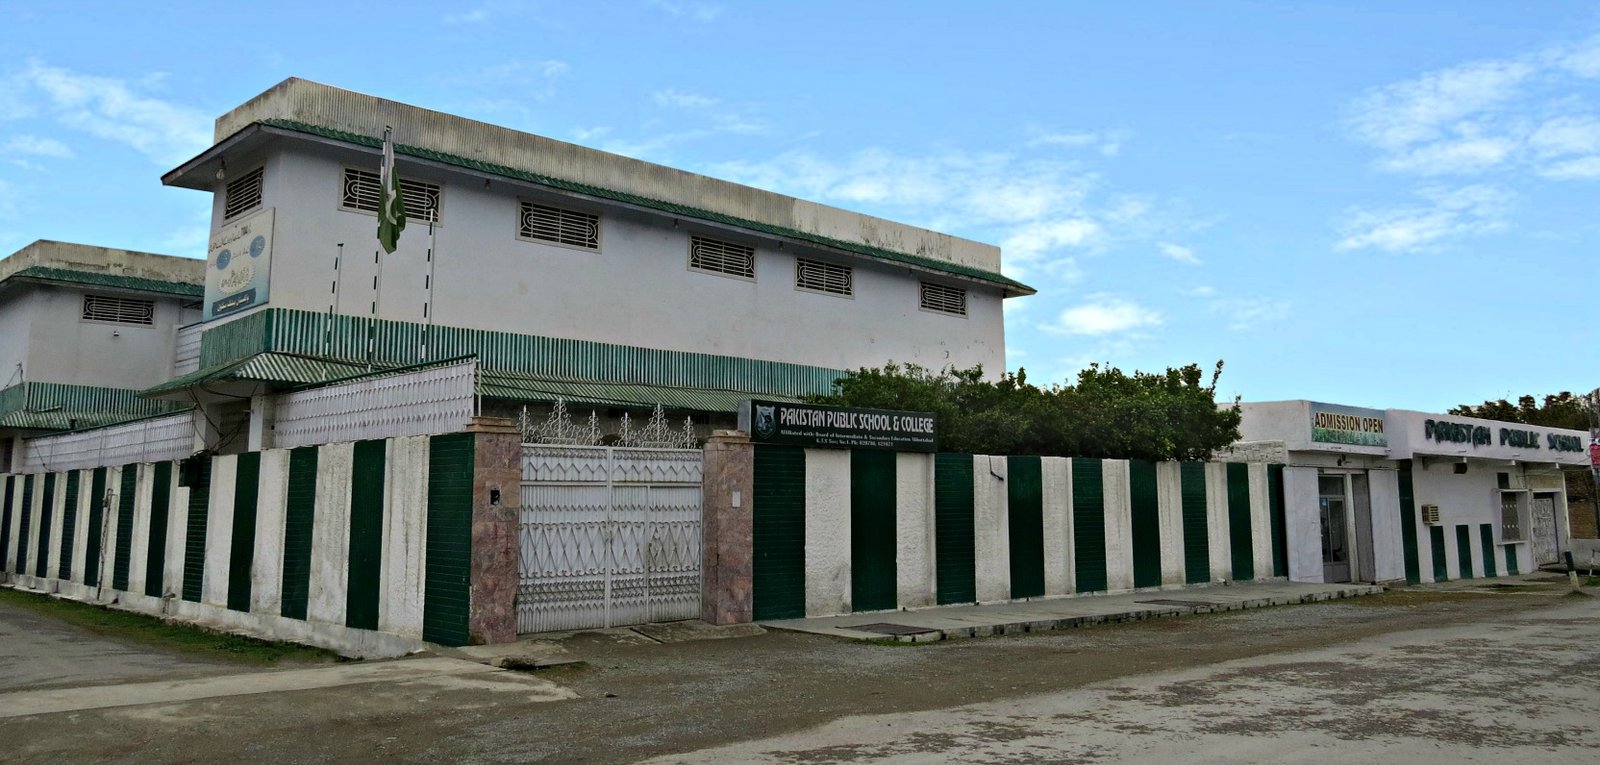 Best School in Haripur - Pakistan Public School - Pakistan Public School Building